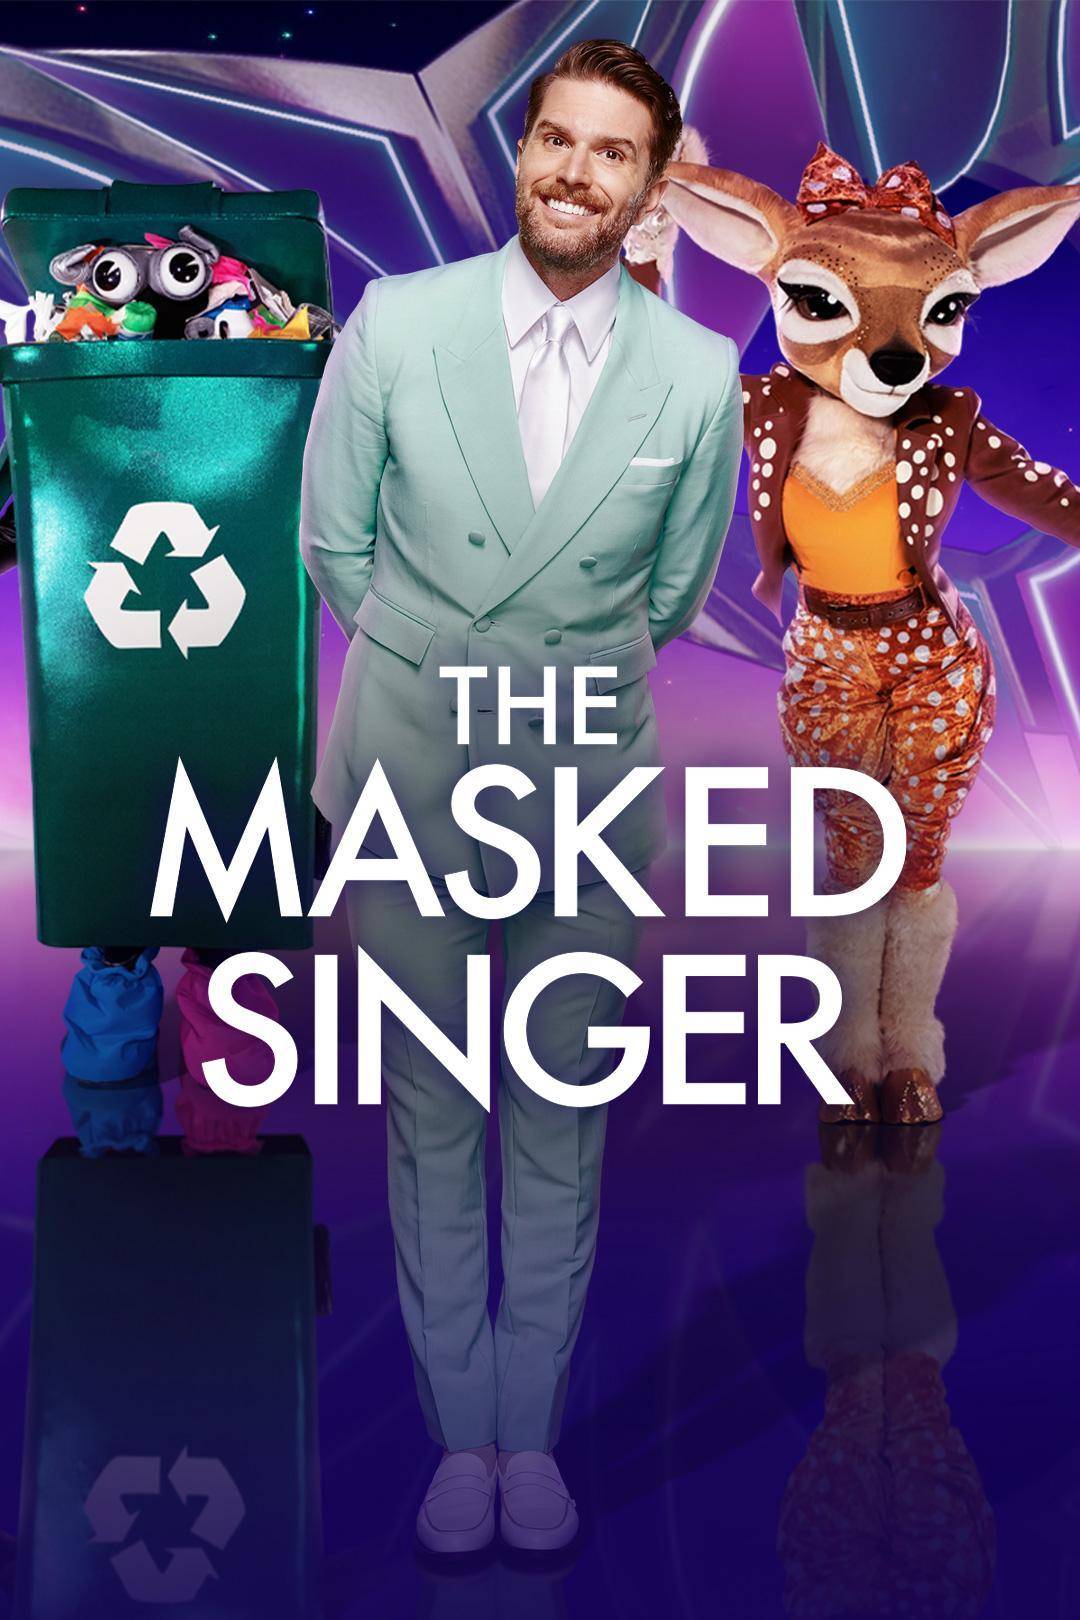 The Masked Singer UK S05E04 [1080p/720p] HDTV (x265/H264) 4cd975aea28cbc9b44437b9e1263e0c2